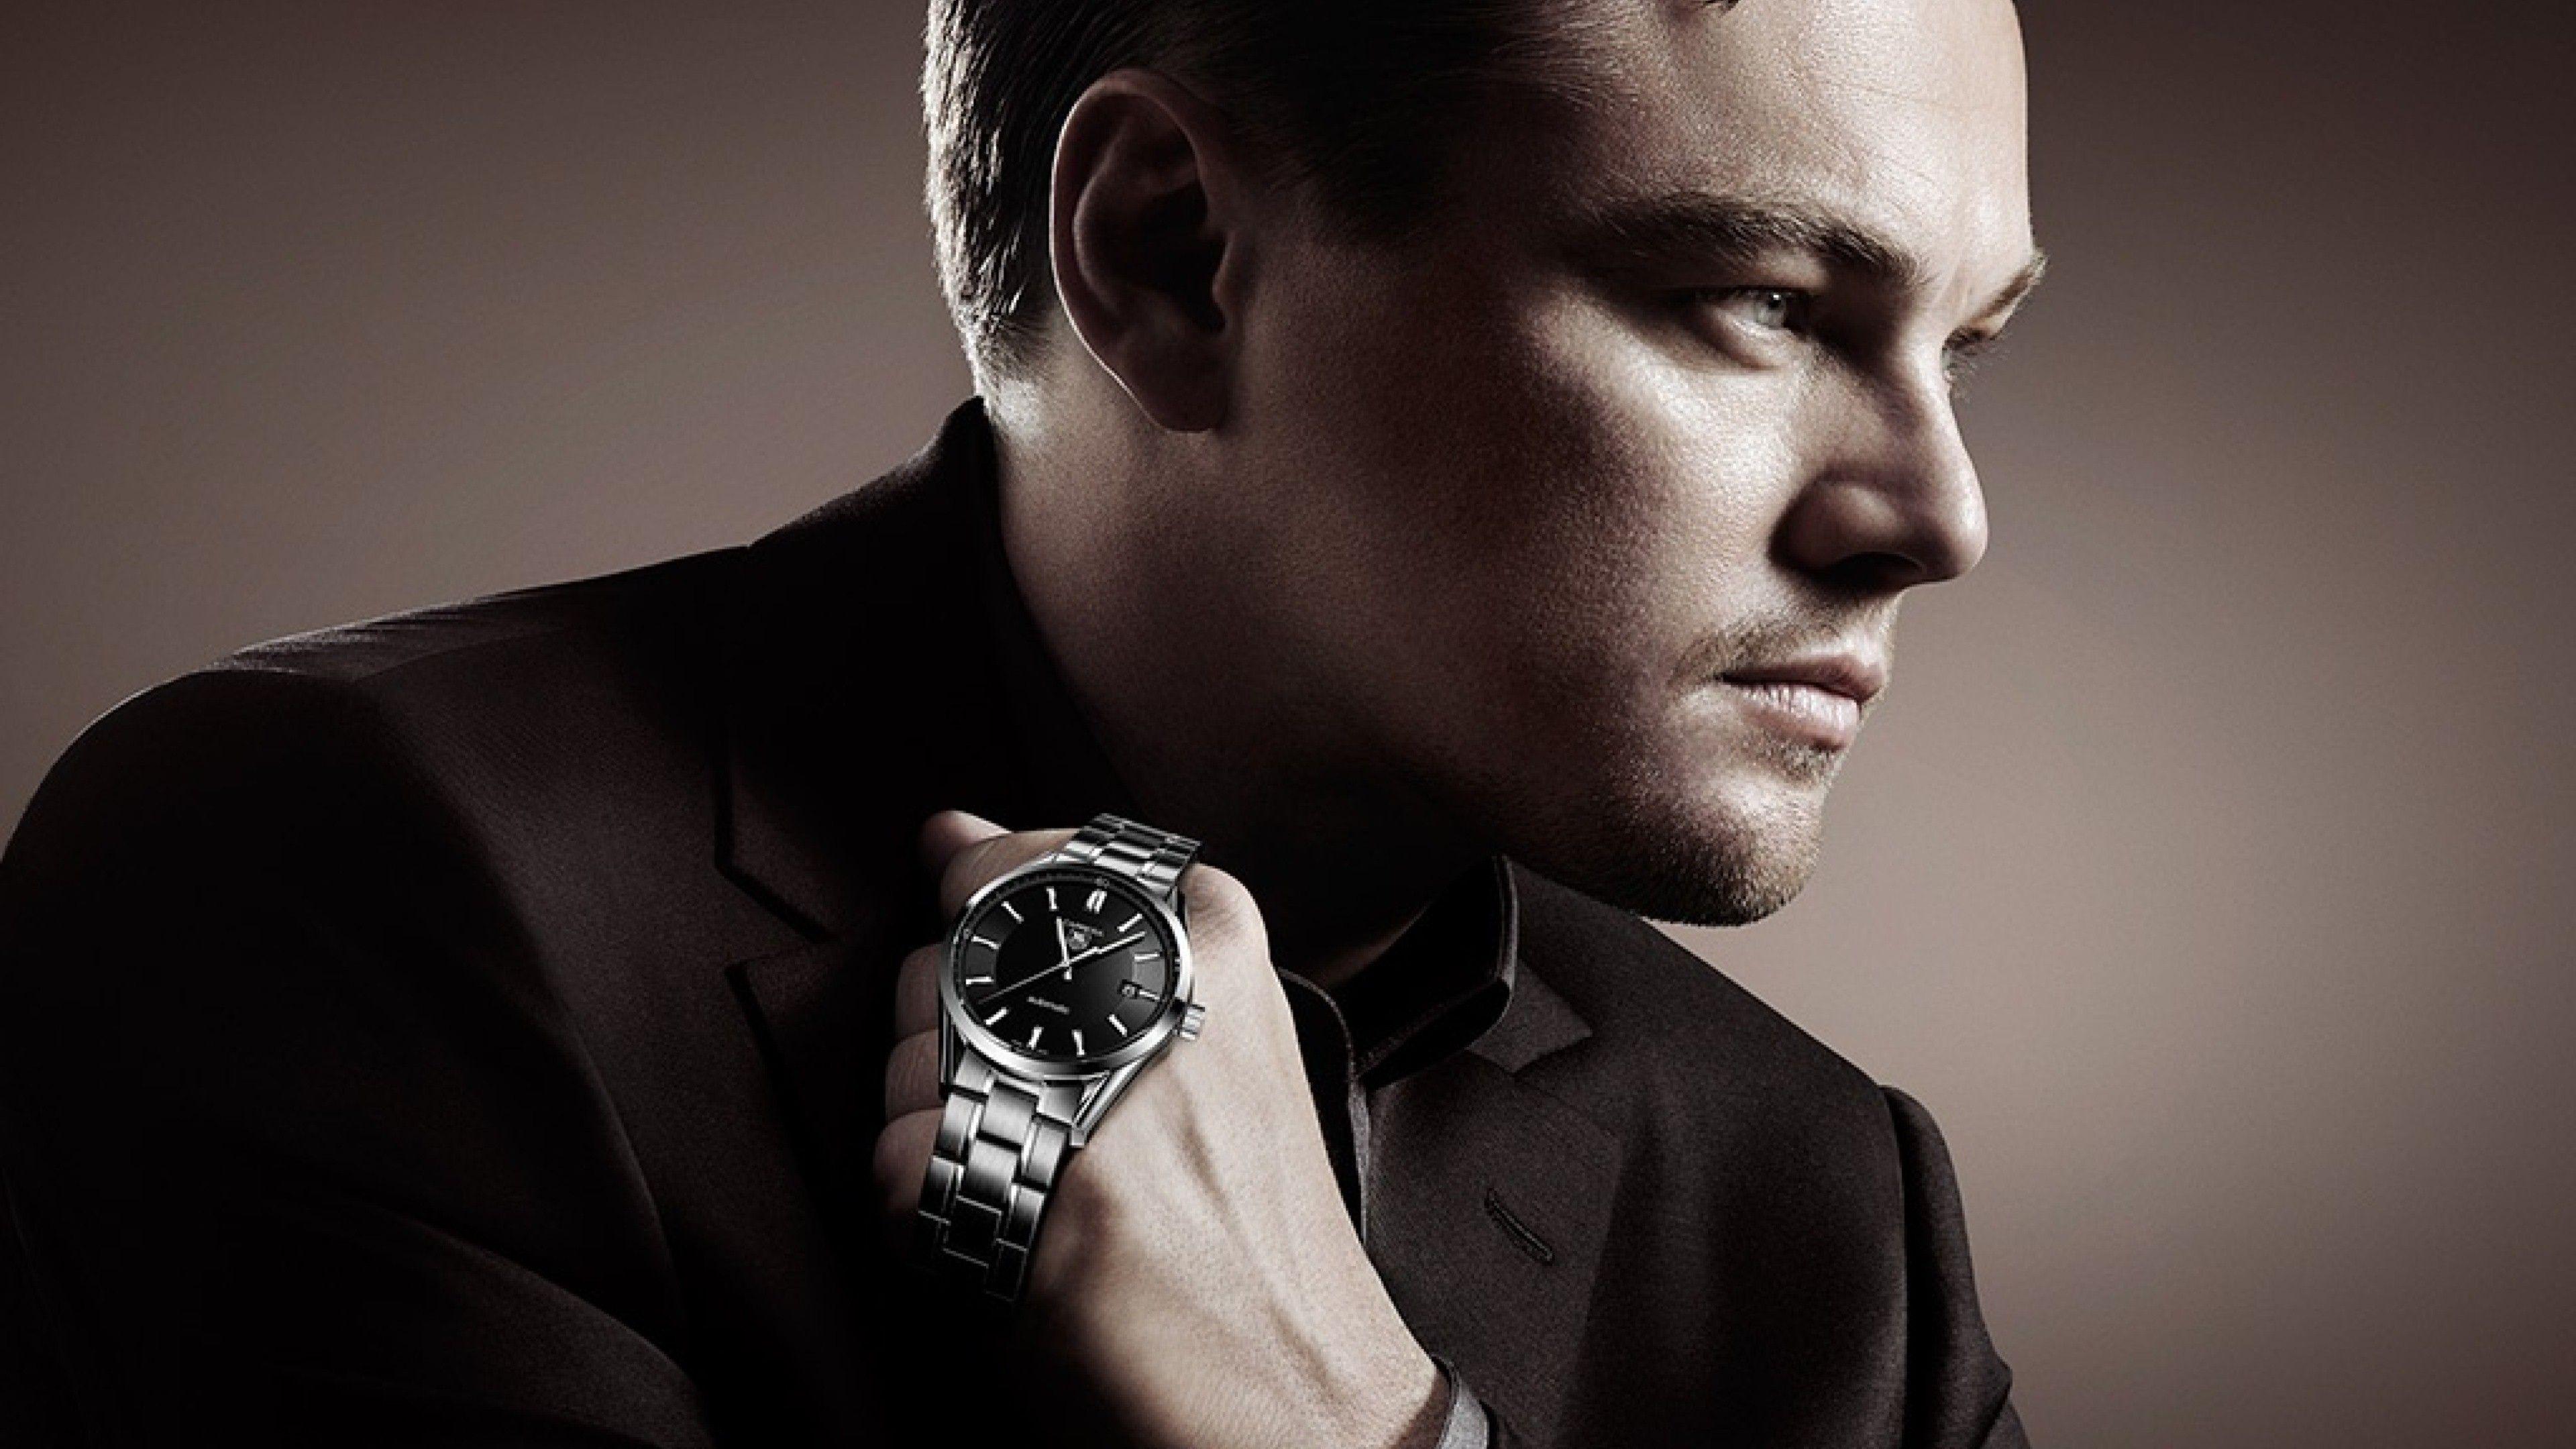 Наручные часы реклама. Леонардо ди Каприо tag Heuer. Модные часы мужские. Реклама часов. Часы наручные мужские реклама.